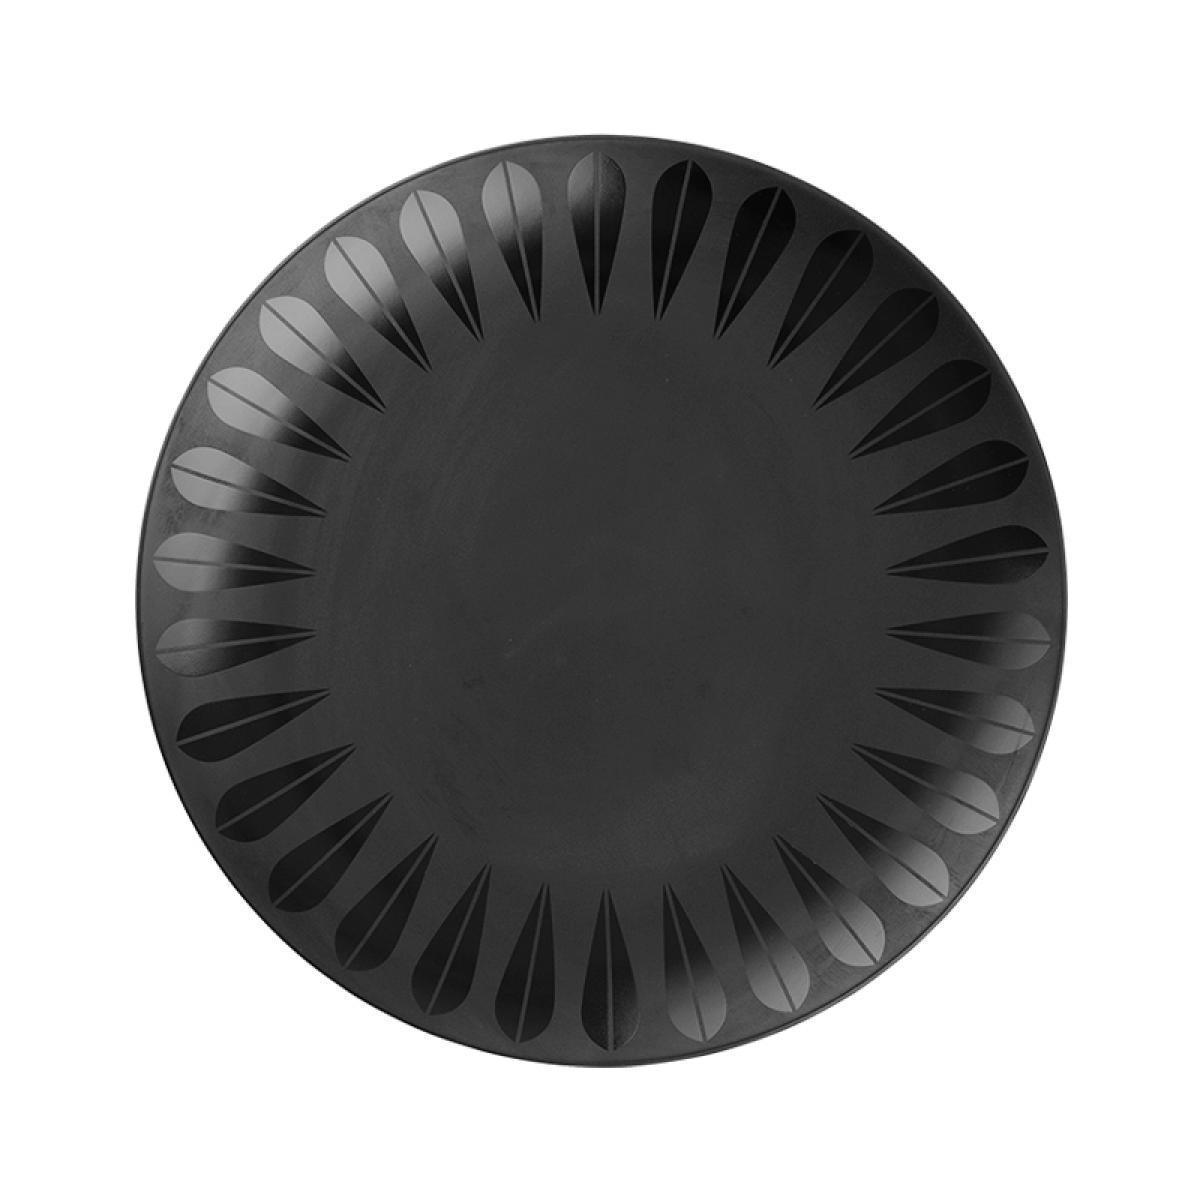 Lucie Kaas Arne Clausen Lotus Plate Black, 28 cm